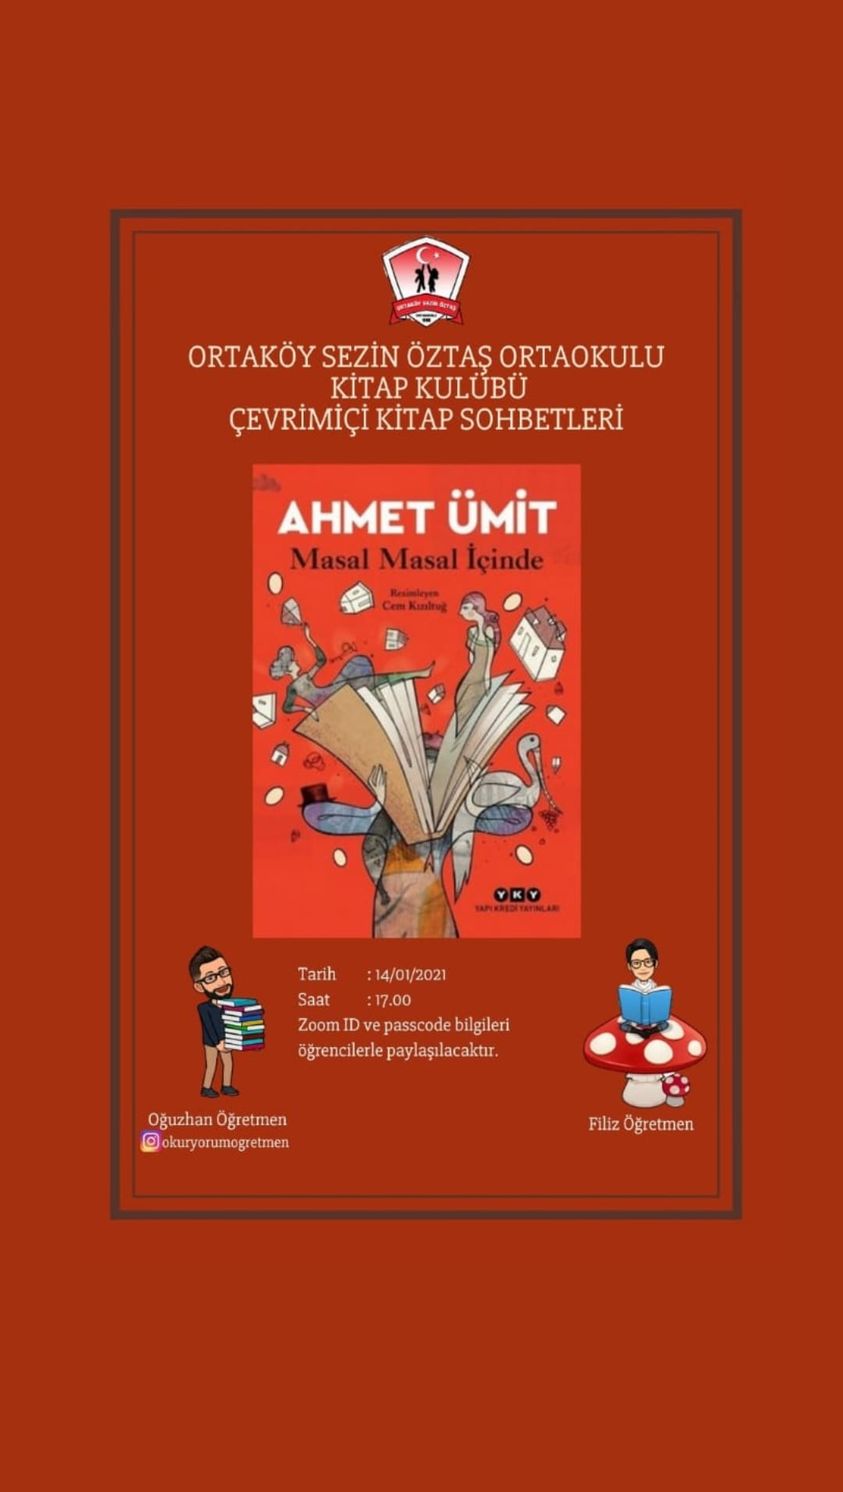 Ortaköy Sezin Öztaş Kitap Kulübü’nden ikinci kitap sohbeti